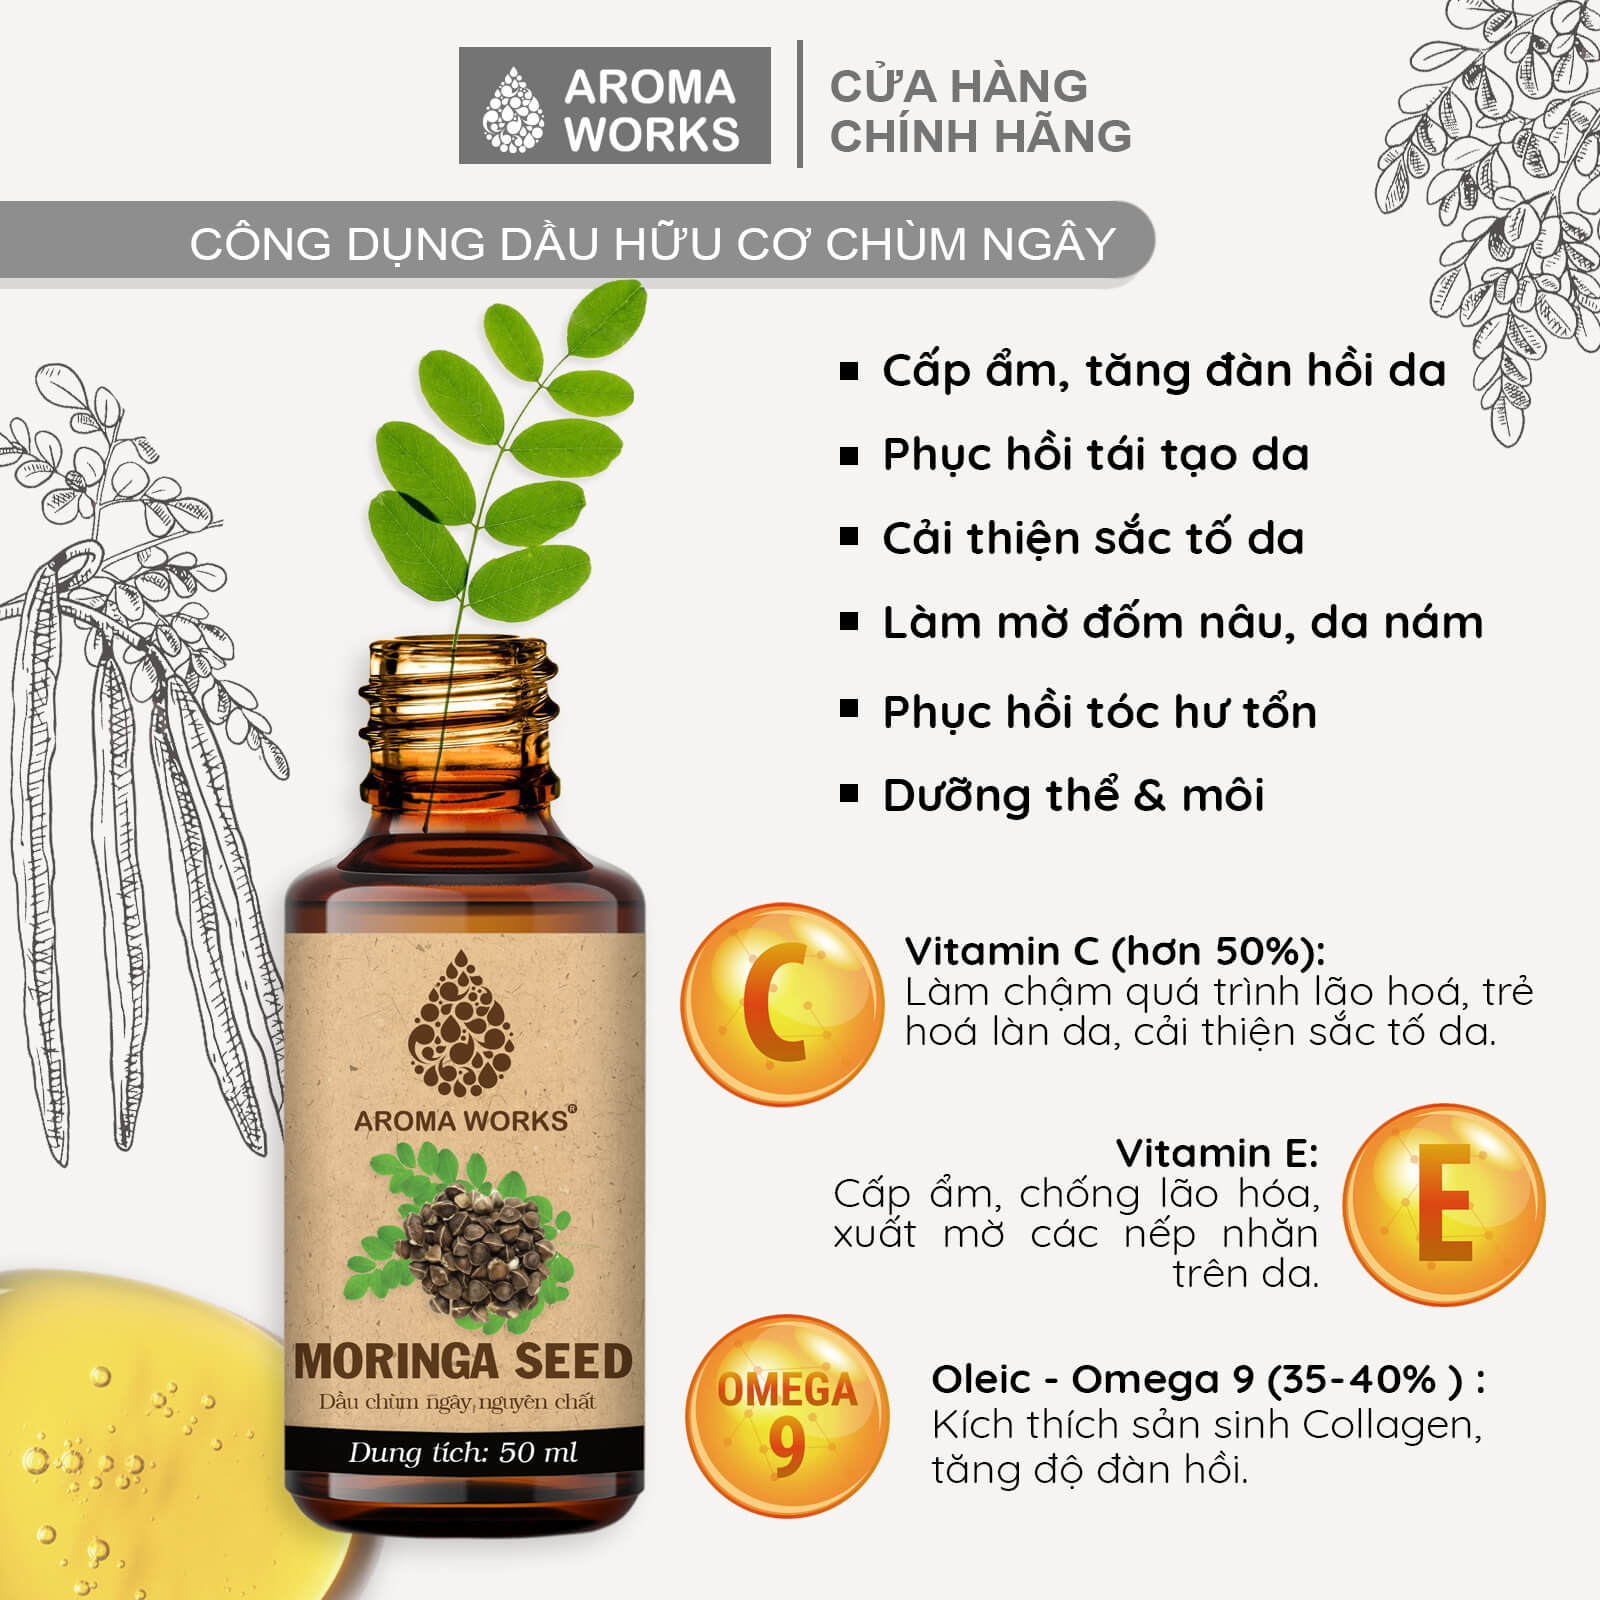 Dầu Hạt Chùm Ngây Aroma Works Organic Moringa Seed Oil Cấp Ẩm, Sáng Da, Mờ Nám, Xóa Mờ Nếp Nhăn